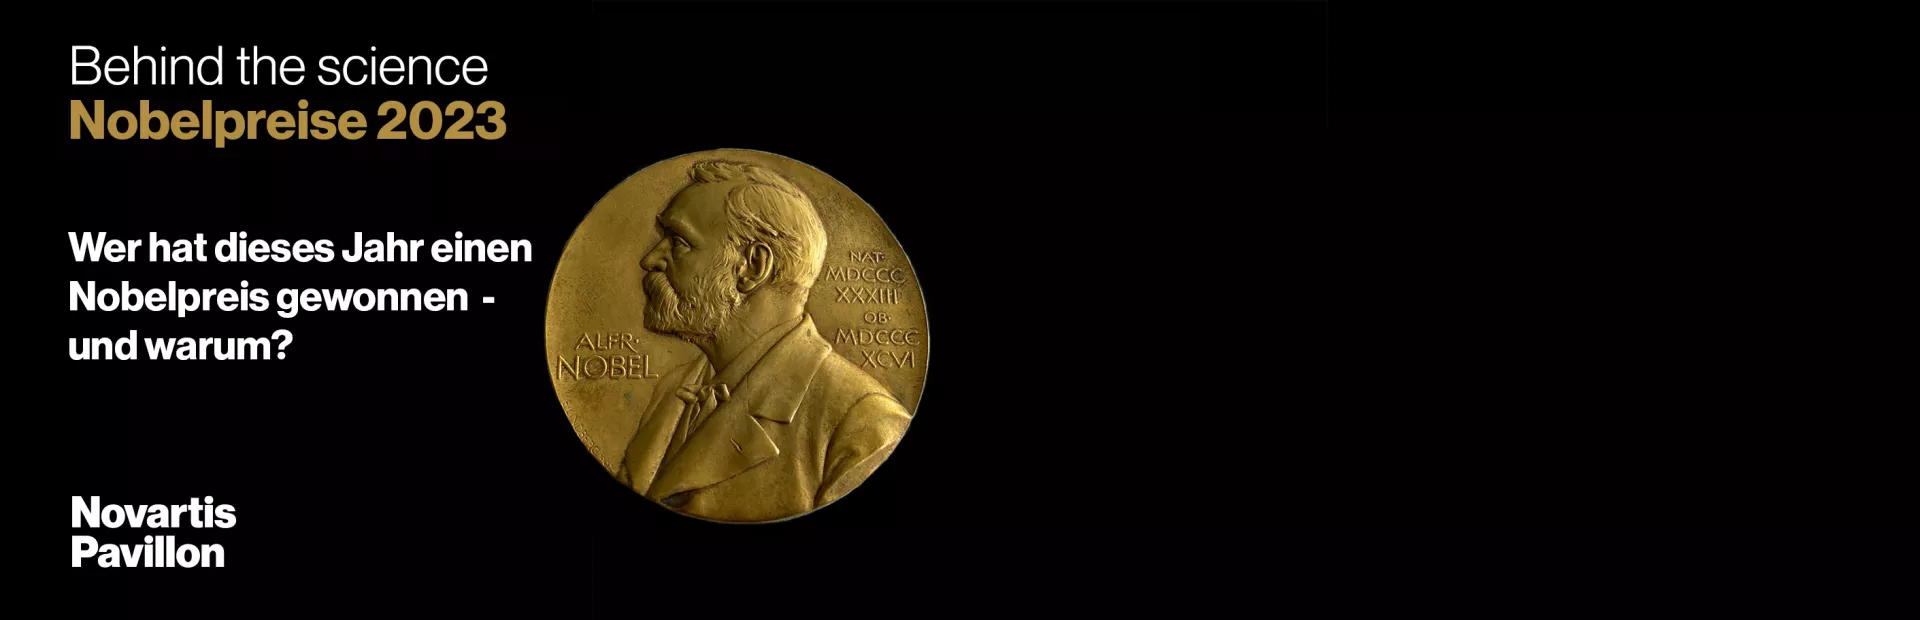 Behind the science: Nobelpreise 2023